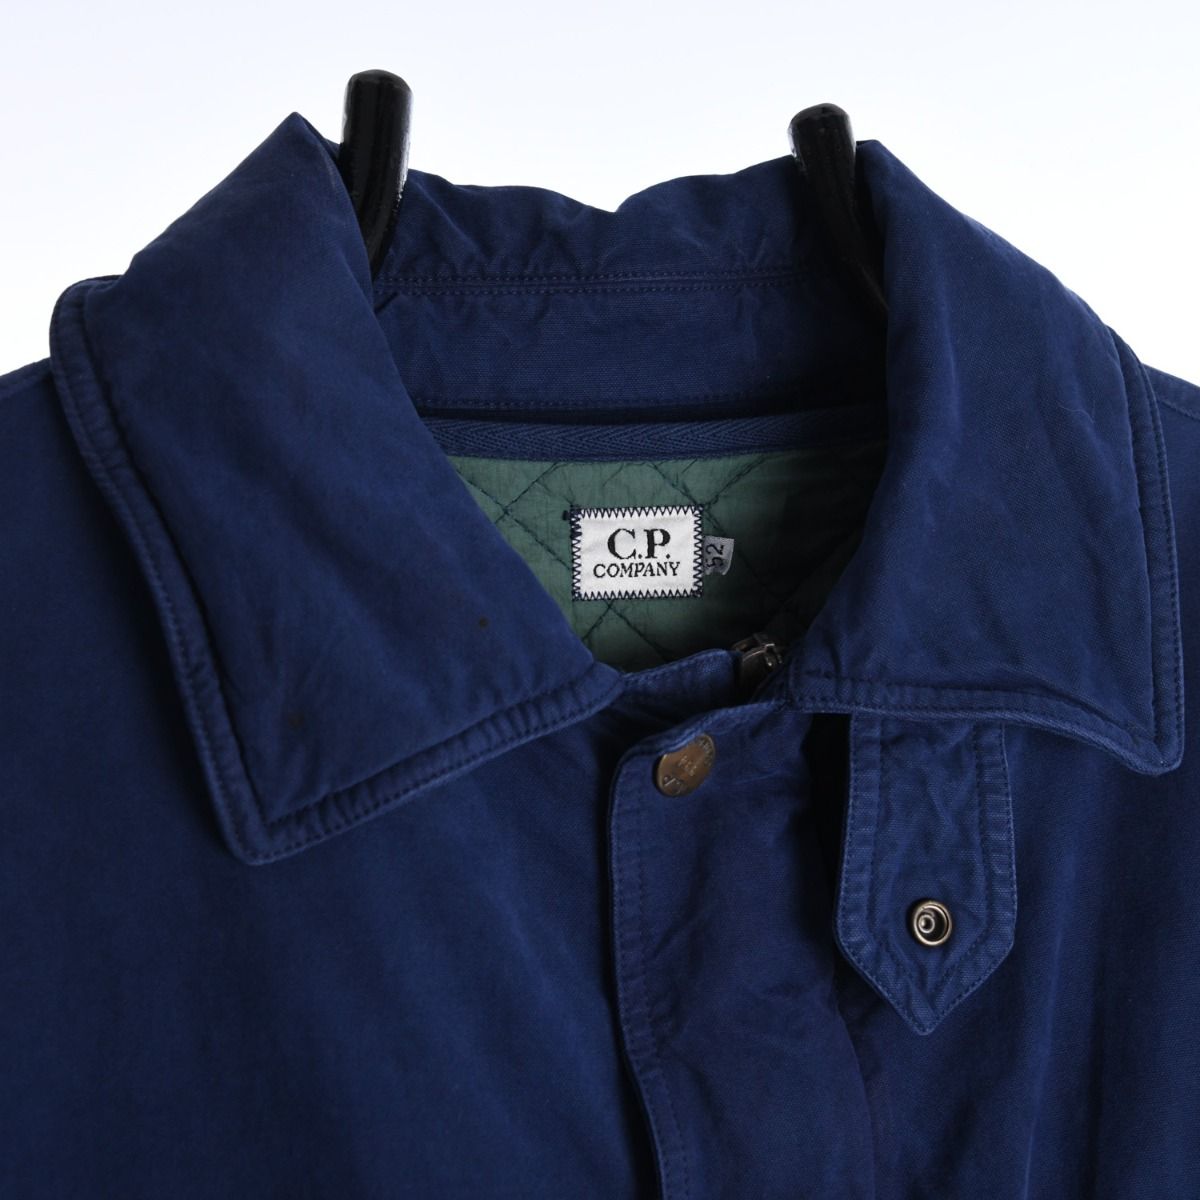 CP Company AW 1994 Jacket